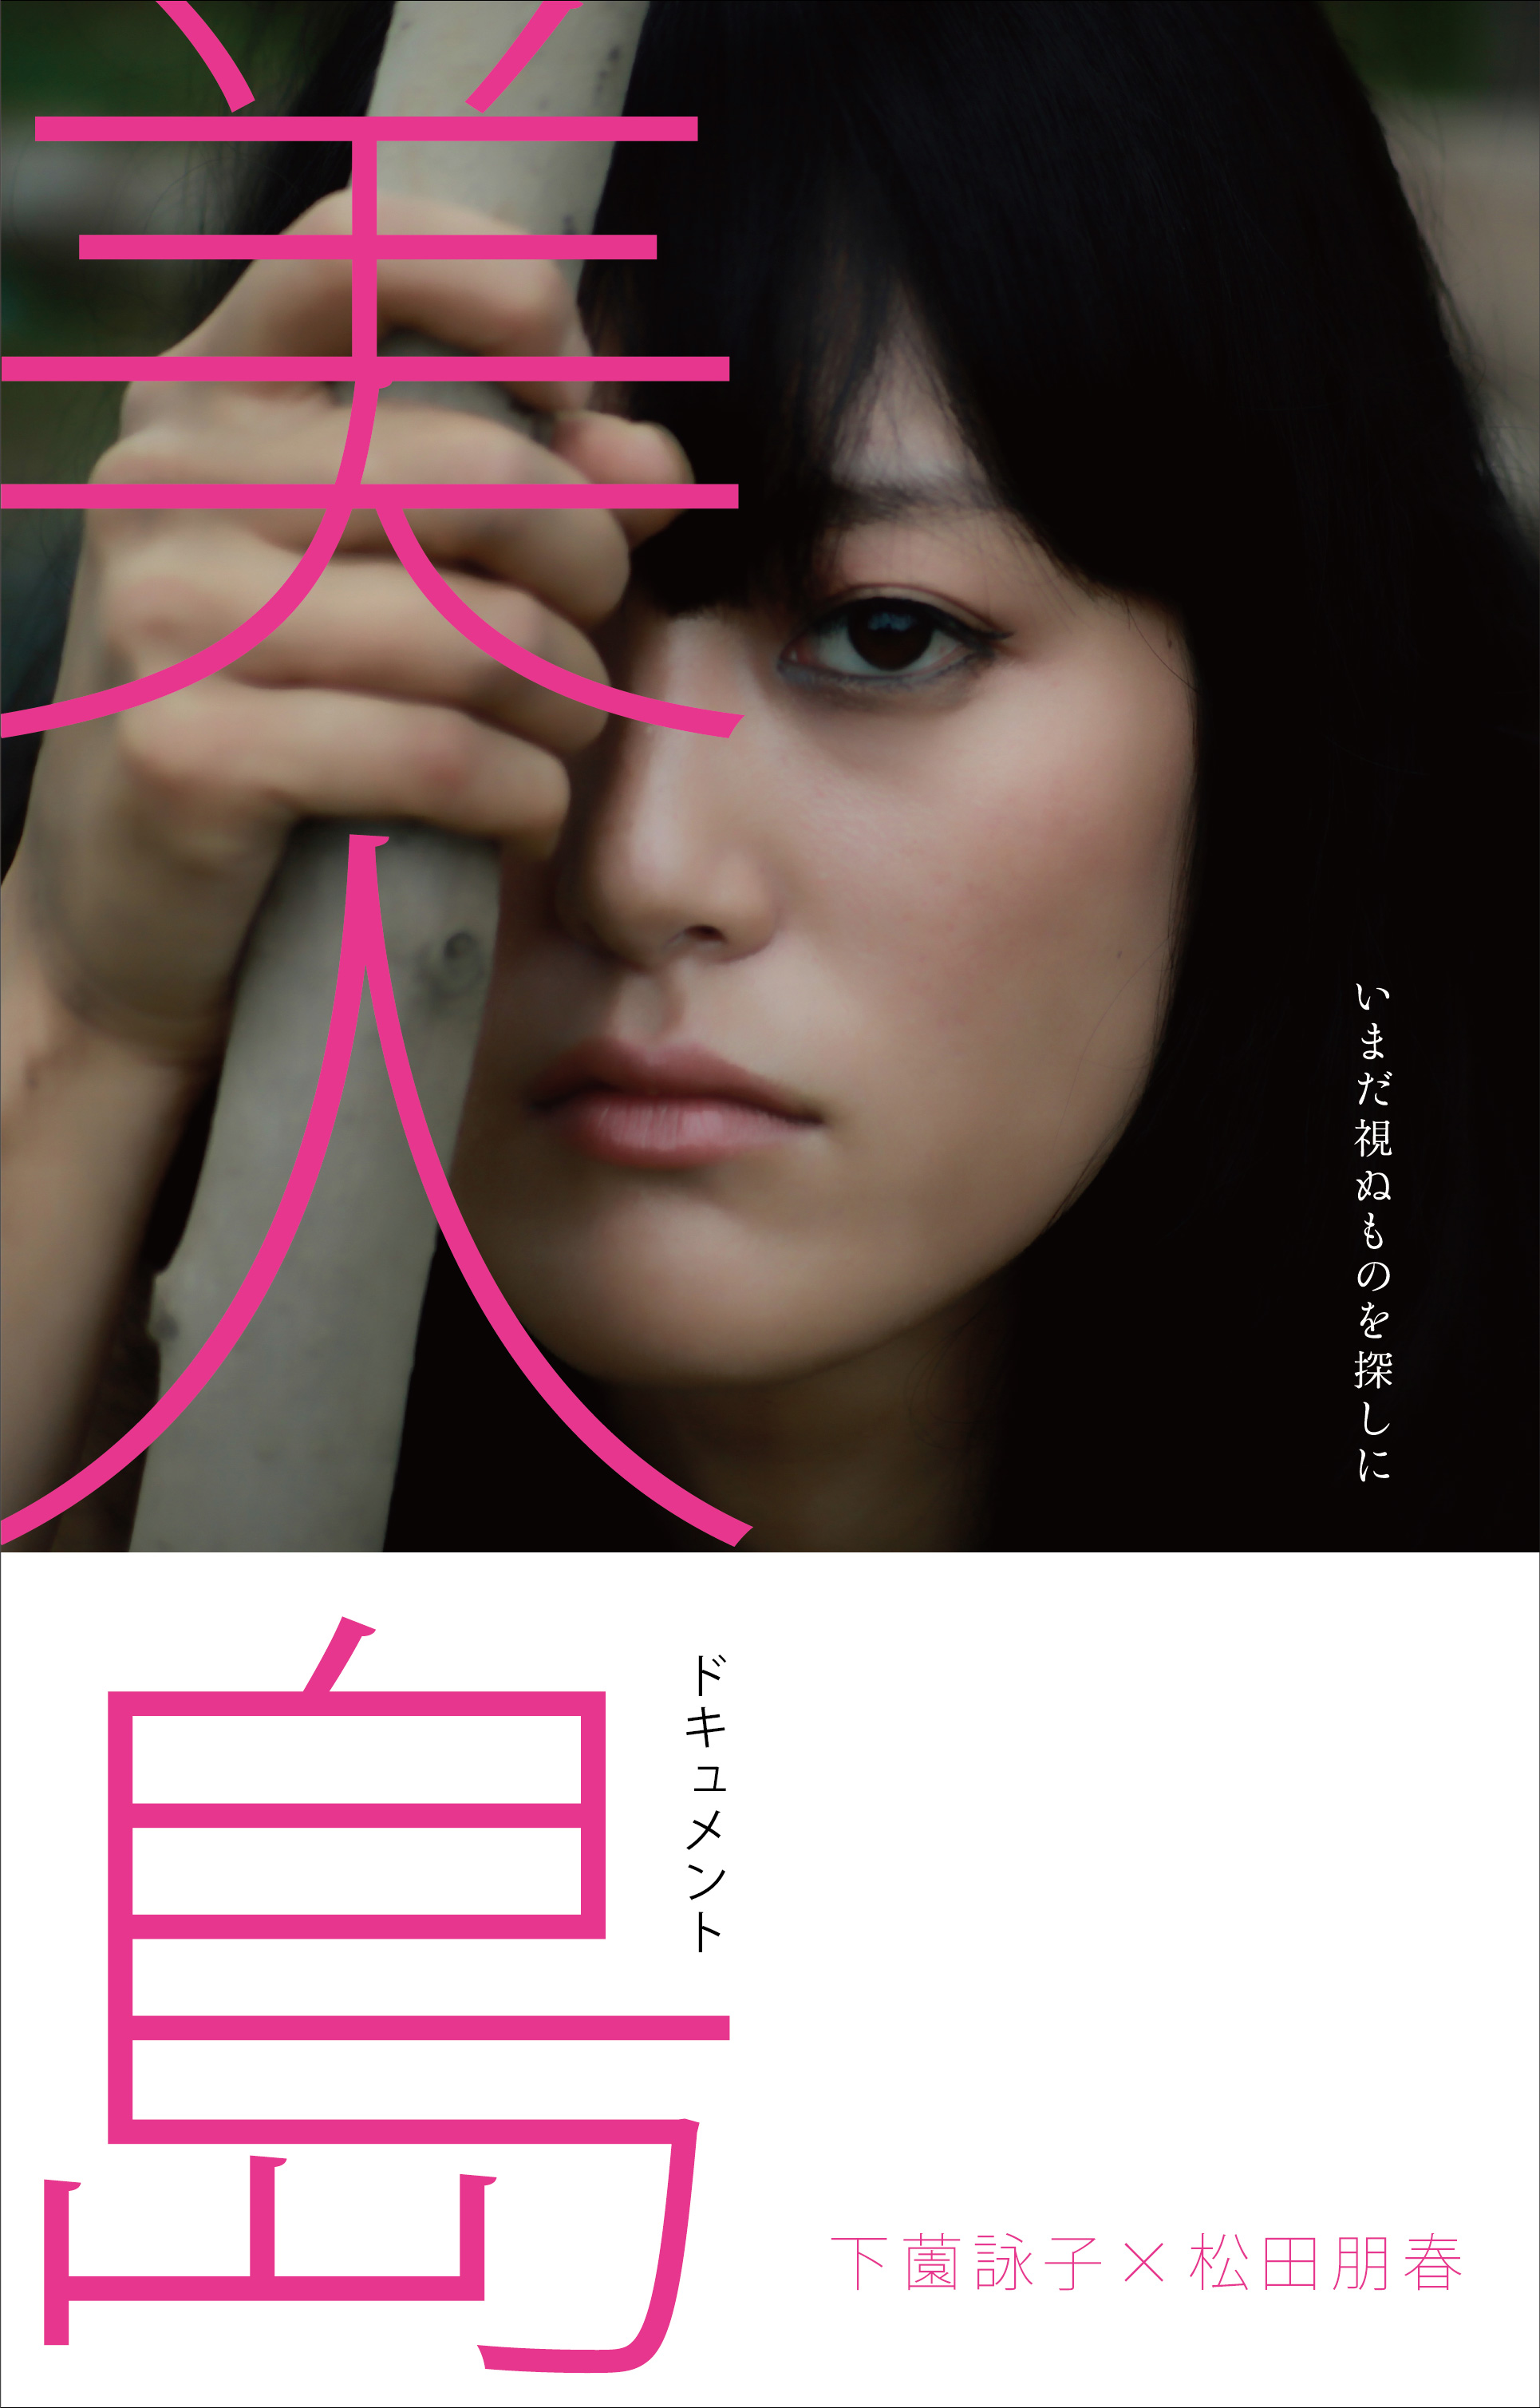 【公開中】ドキュメント・下薗詠子×松田朋春 写真作品「美人島」